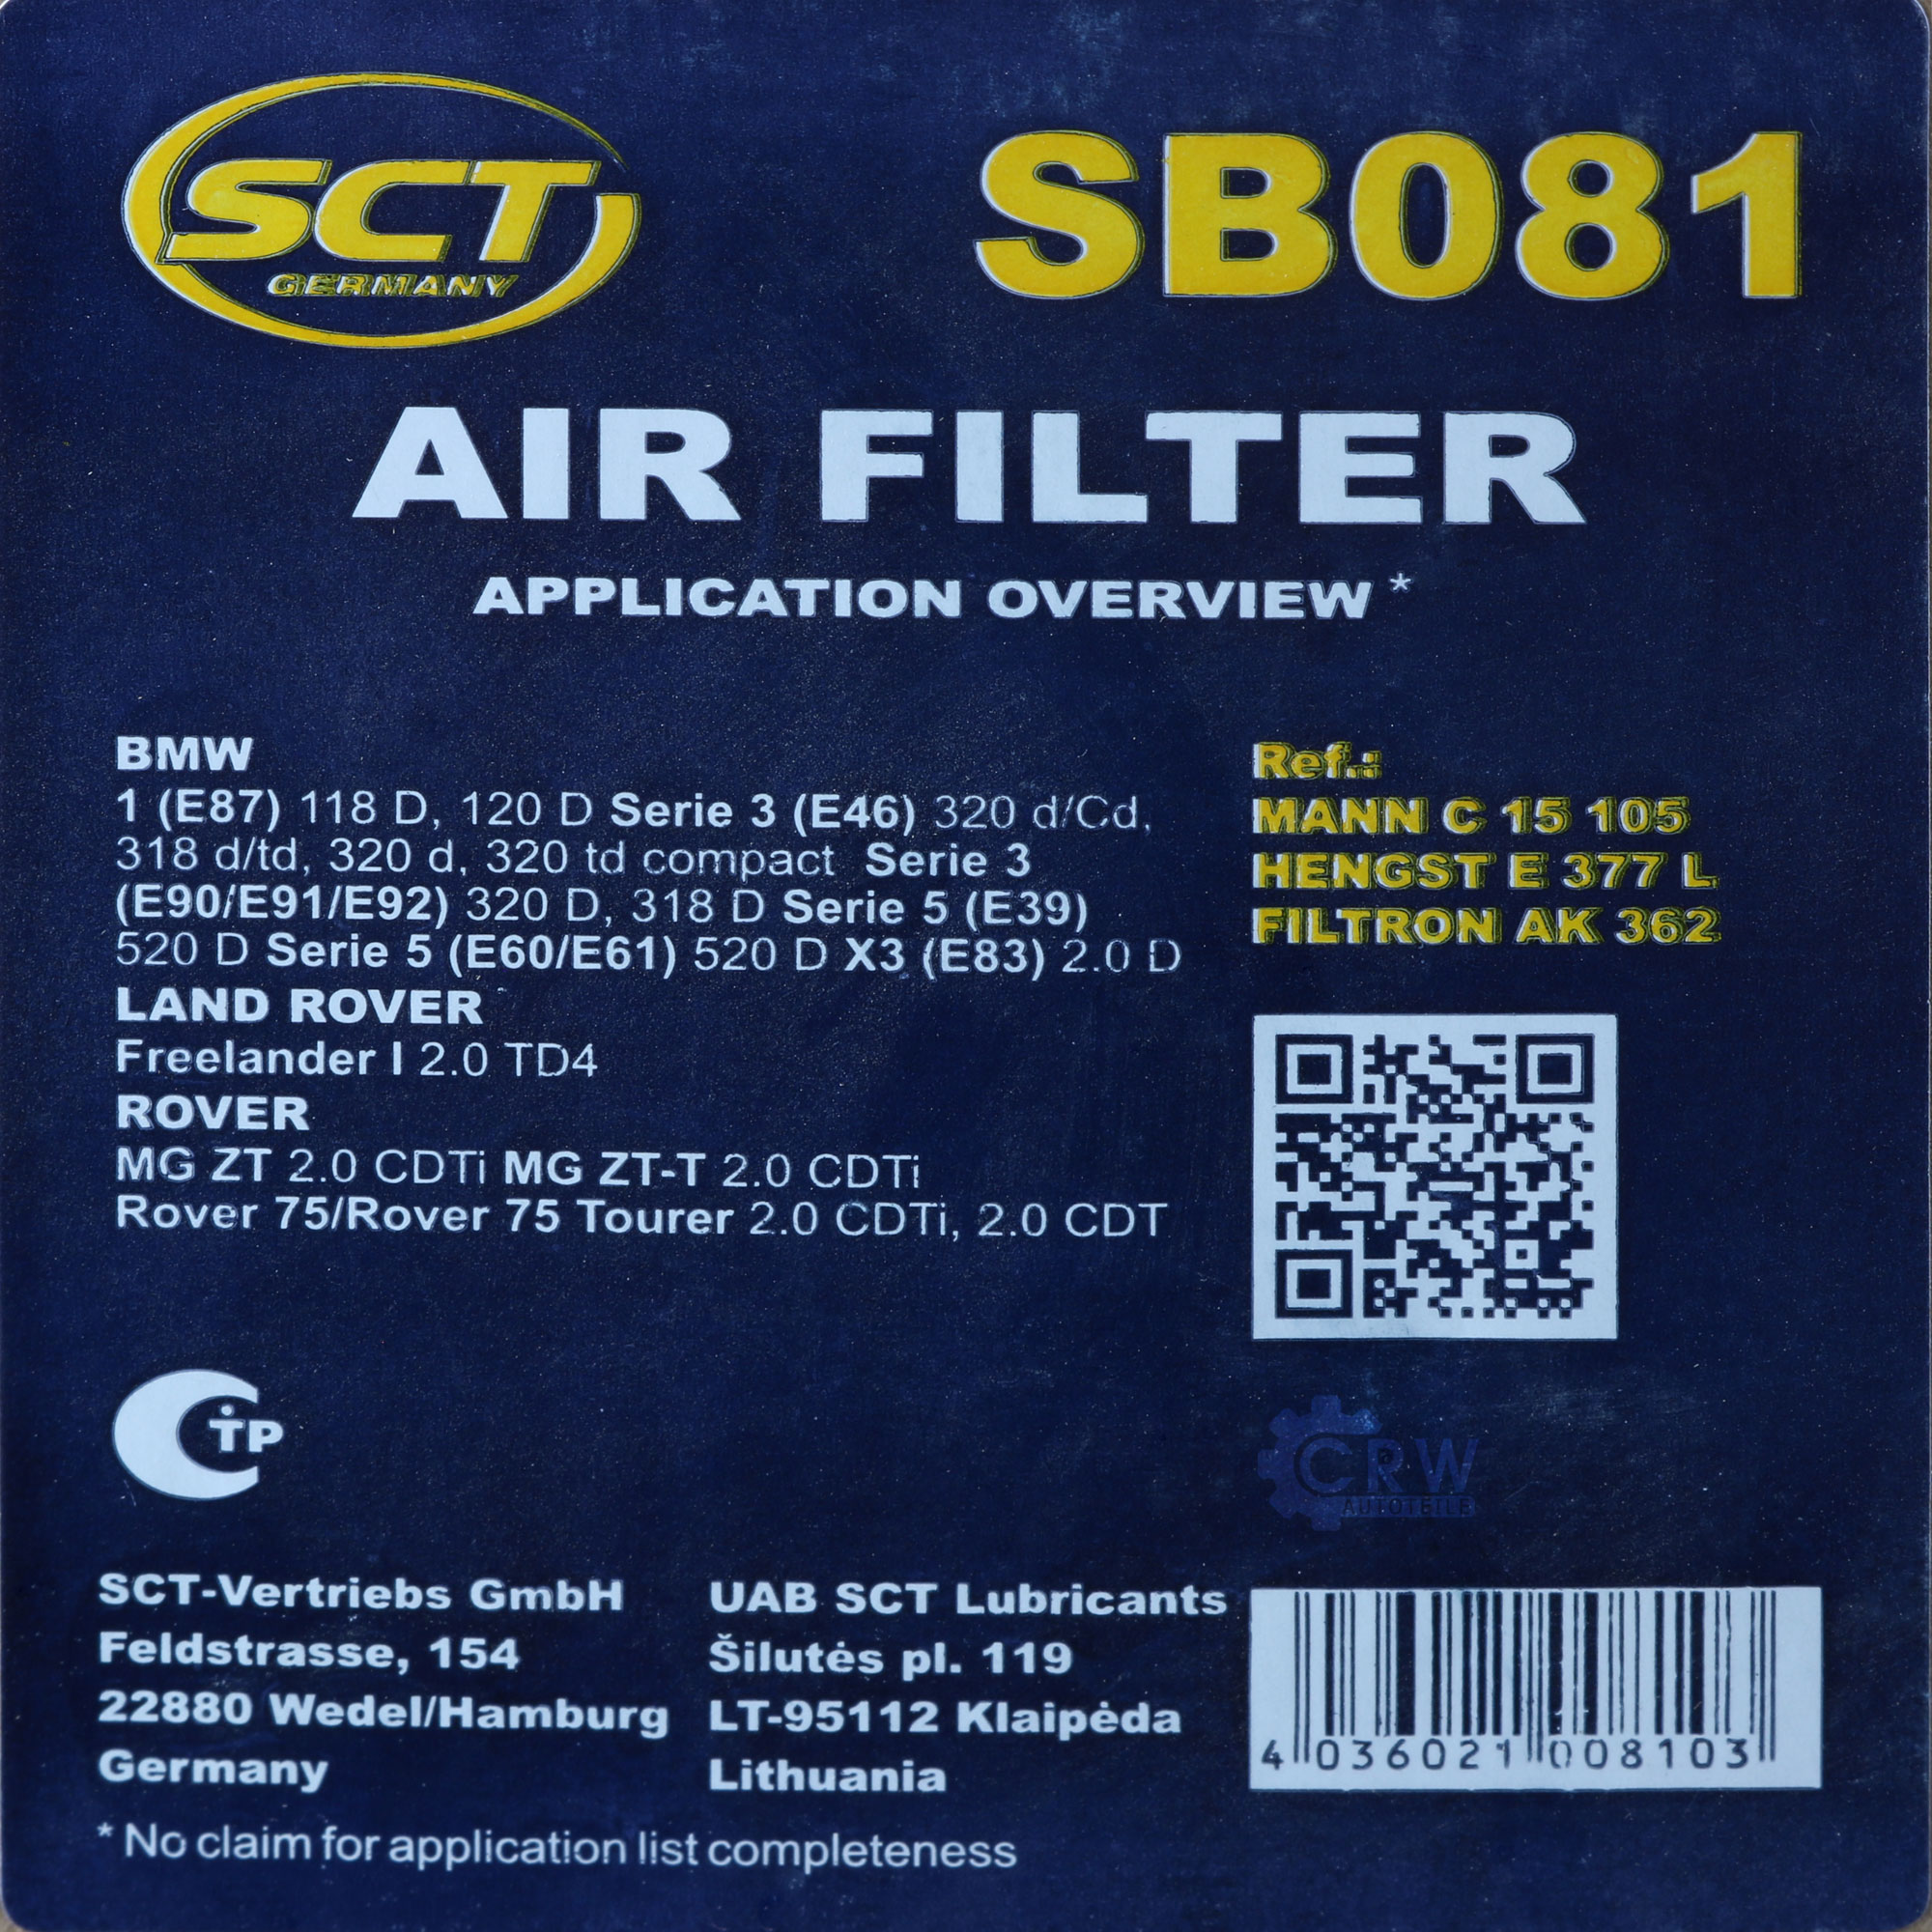 SCT Luftfilter Motorluftfilter SB 081 Air Filter